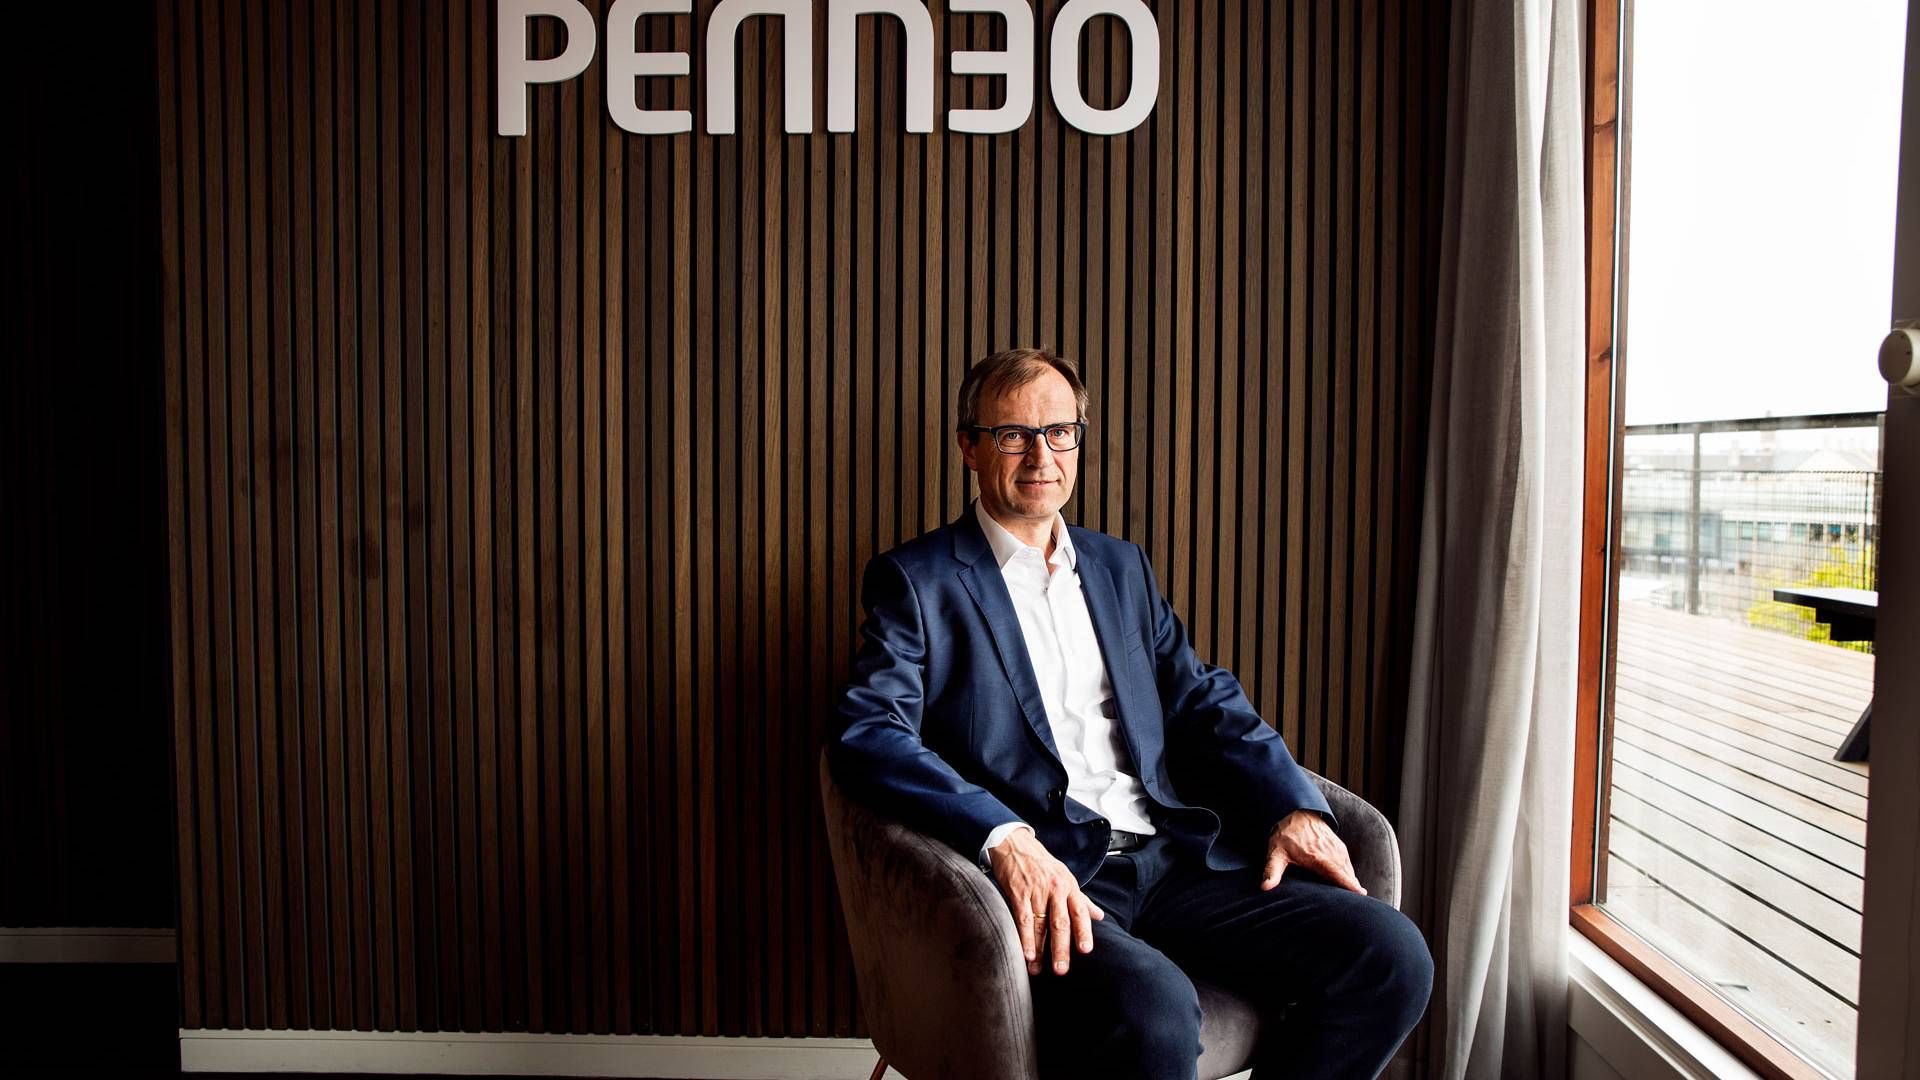 Christian Stendevad er adm. direktør i Saas-selskabet Penneo, som sidste år gjorde sin entre på Nasdaqs hovedbørs. | Foto: Penneo/PR